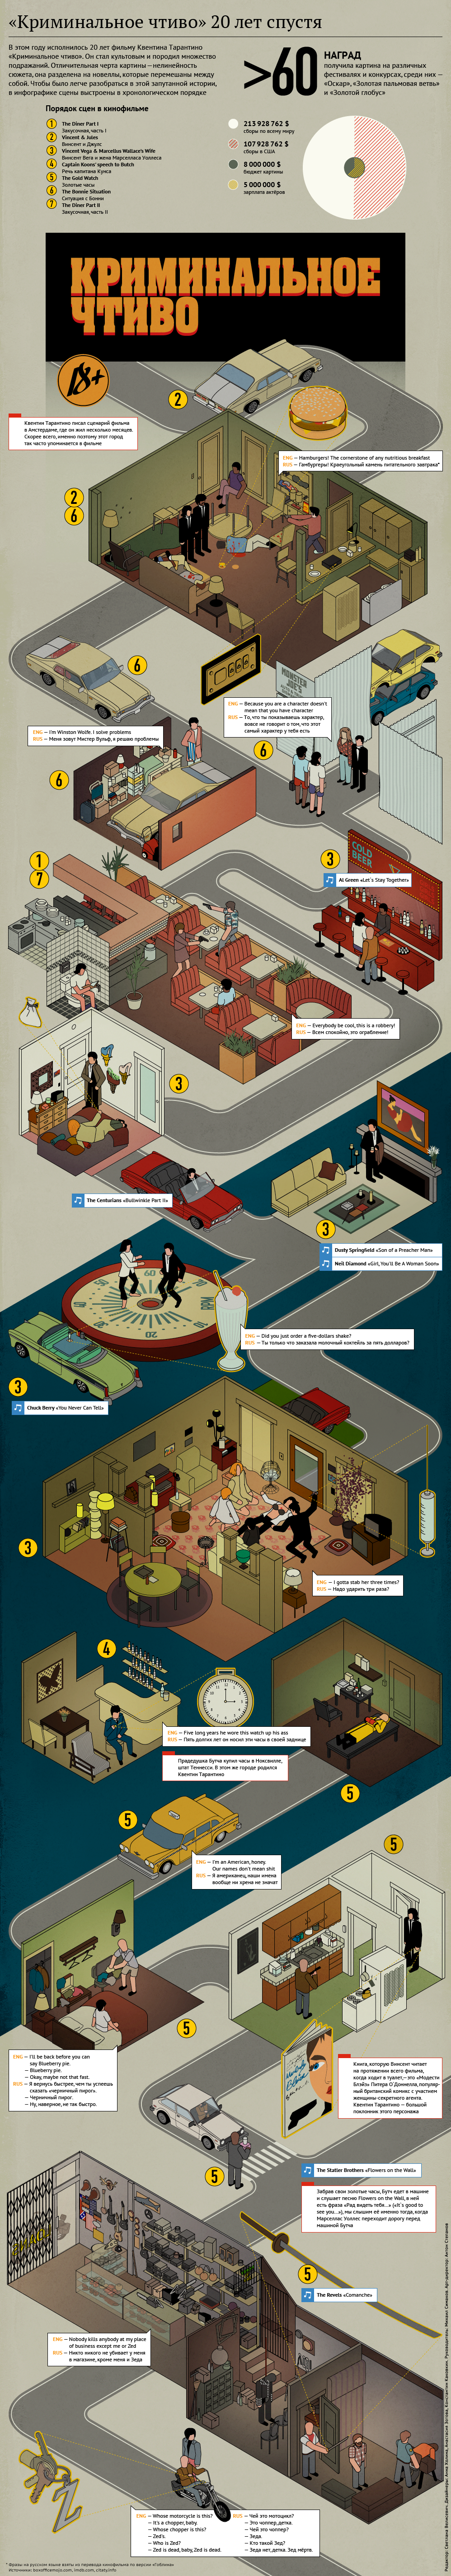 pulp fiction Tarantino movie hamburger infographic 20 Years